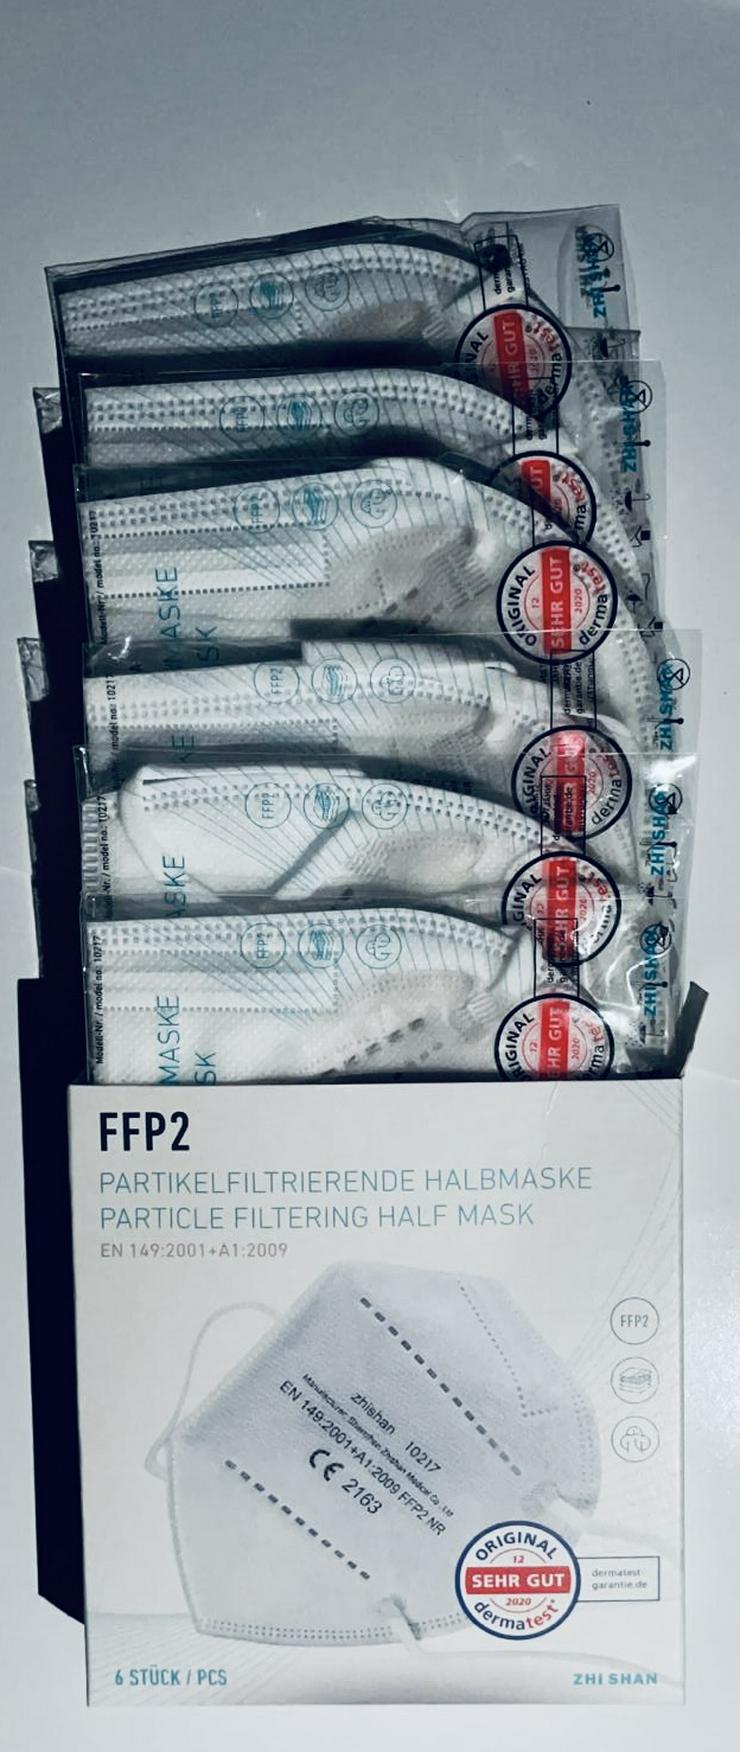 Bild 8: ab 0,36€ ✅6 er Pack✅ TÜV Rheinland ✅ FFP2 Maske Zhi Shan✅Zhishan